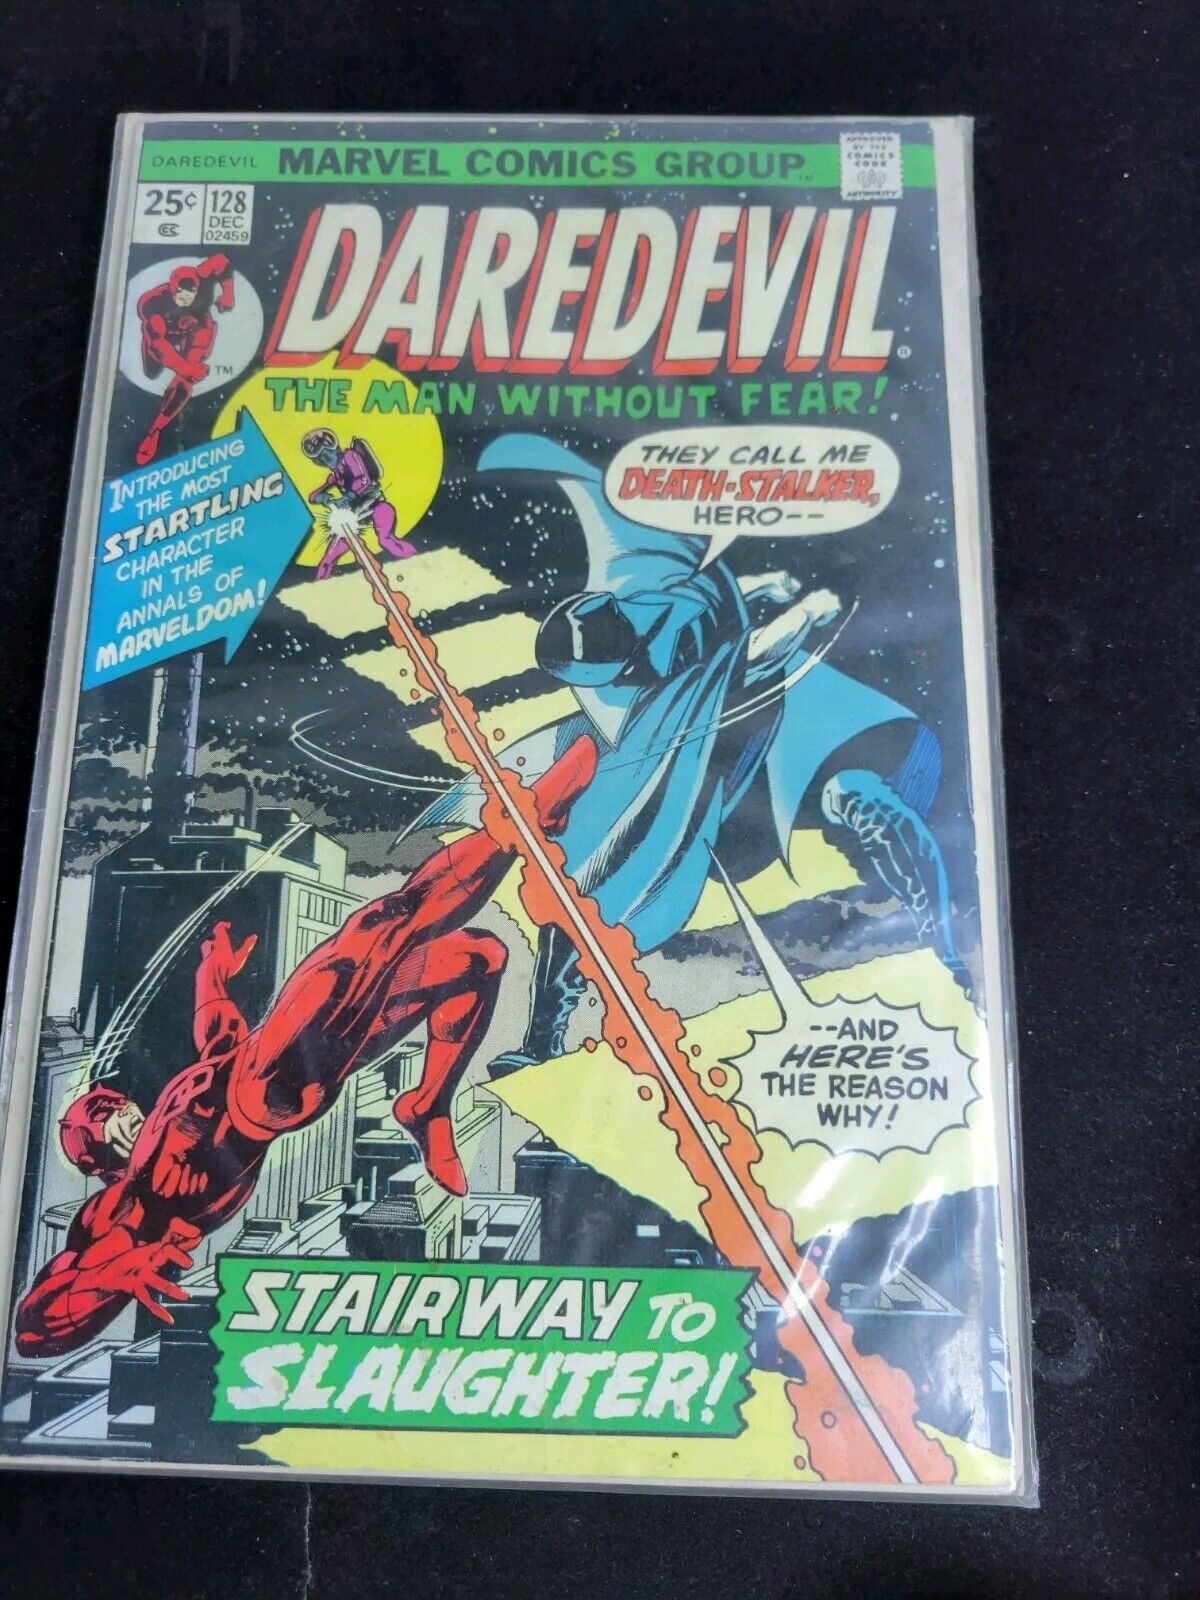 DAREDEVIL #128 Marvel DEC 1964/1975 VF Cover Art Gil Kane 